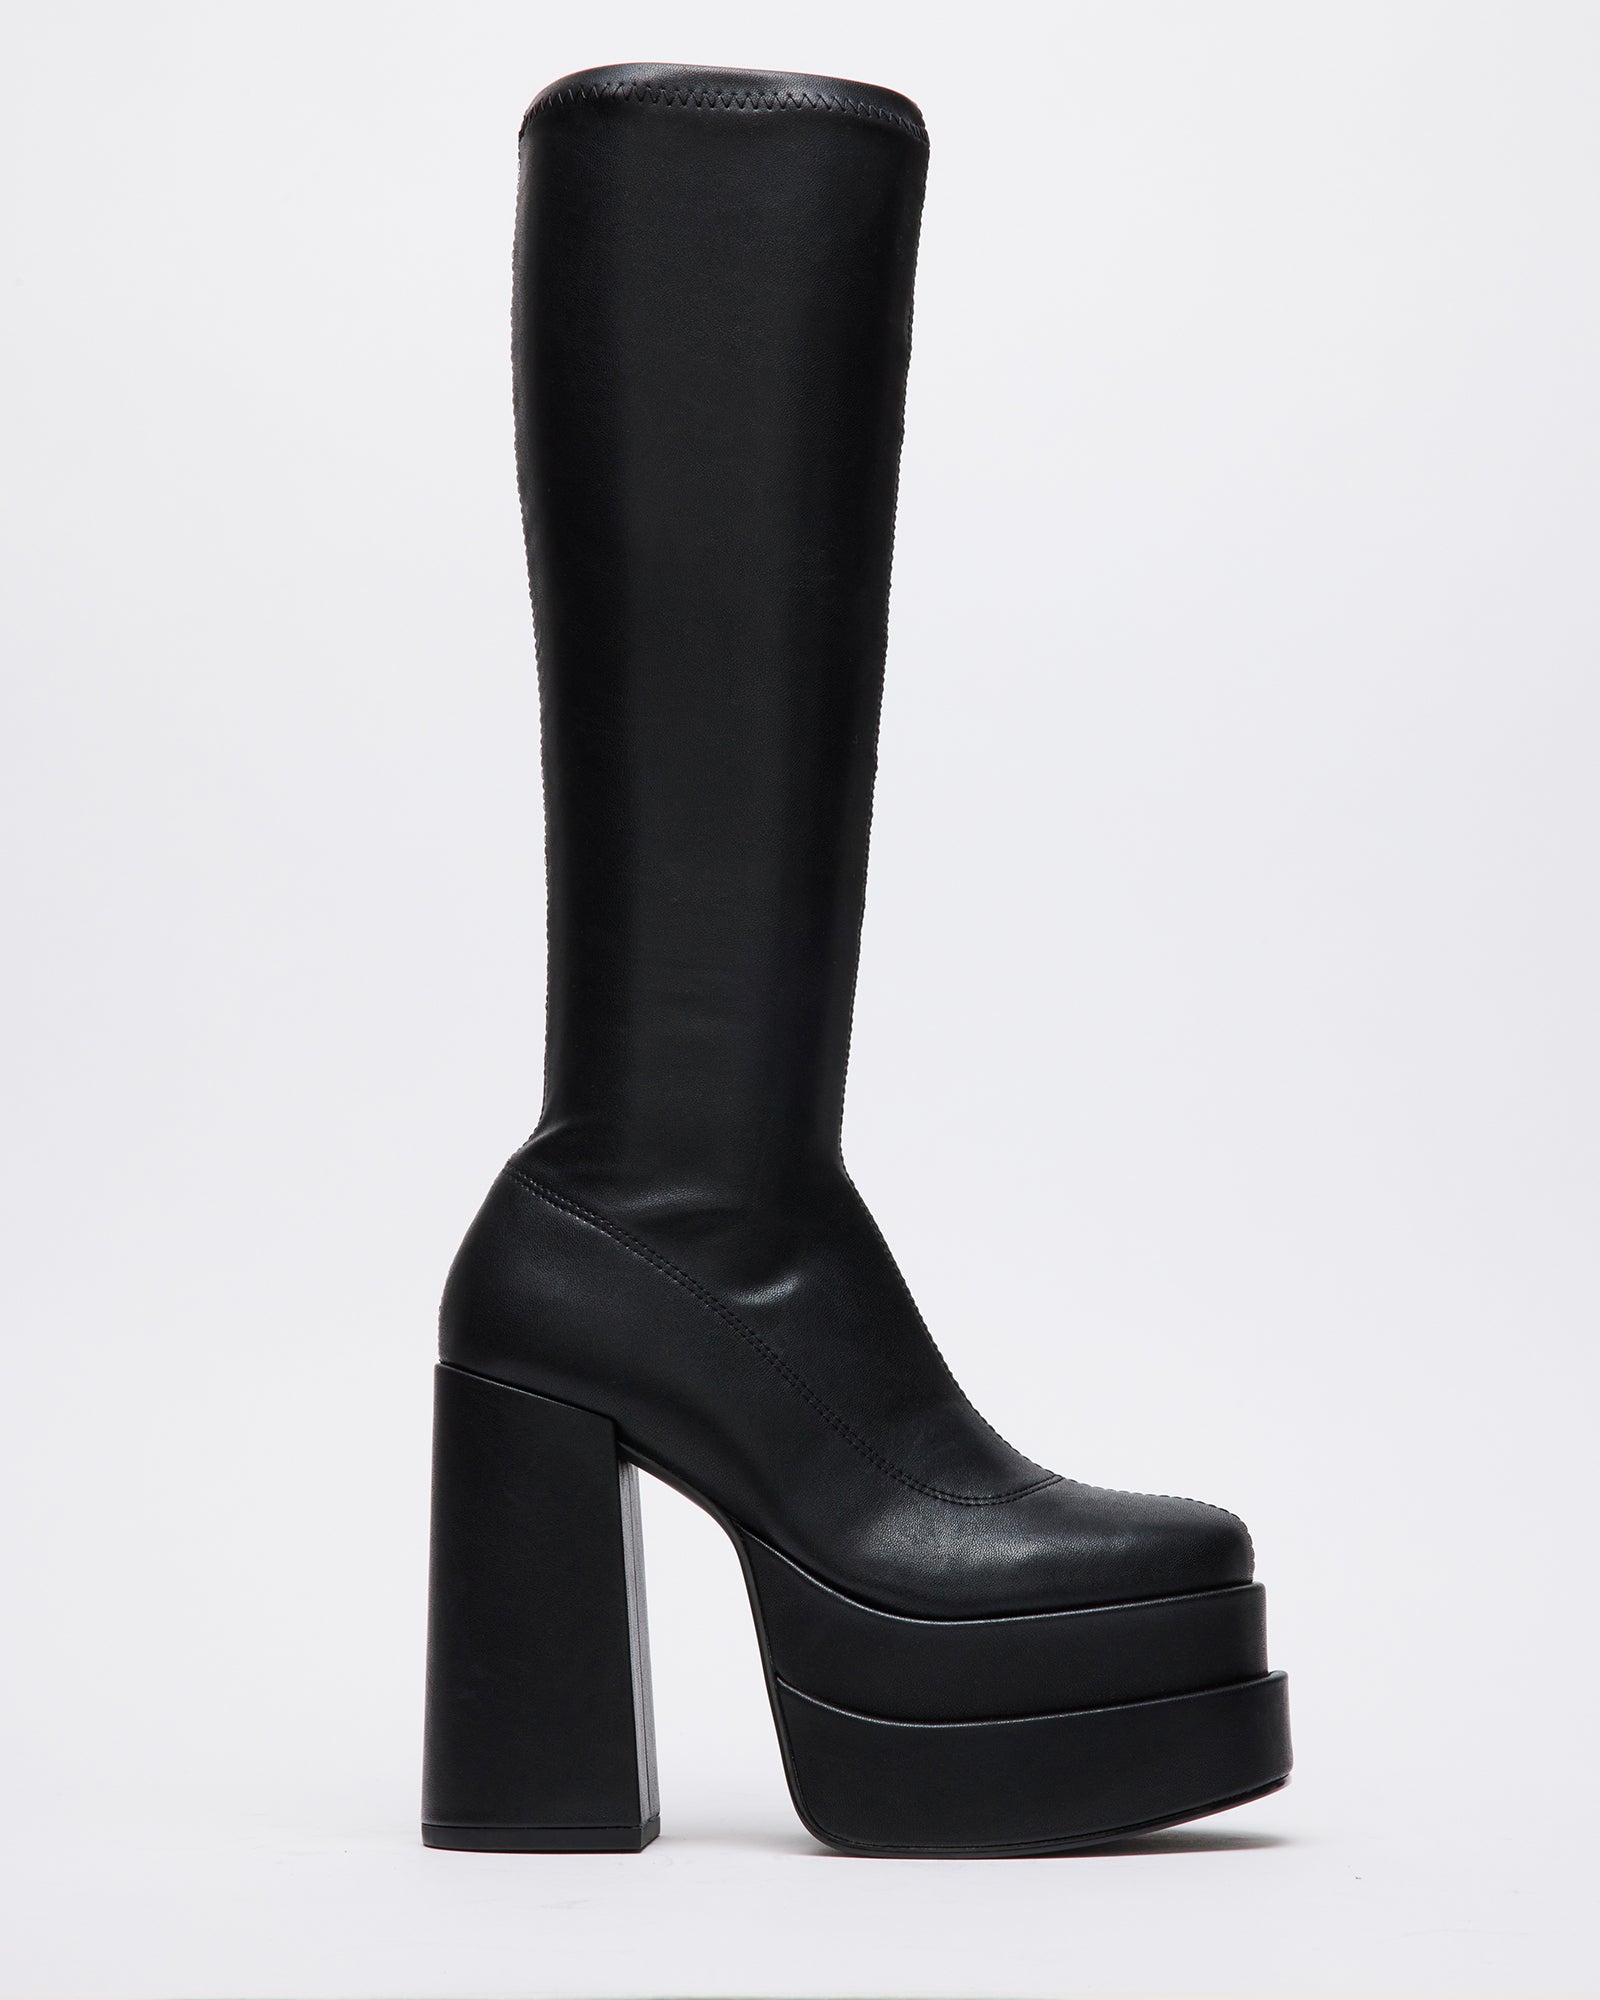 Women's Boots | Over The Knee, Block Heel, Western & Platform